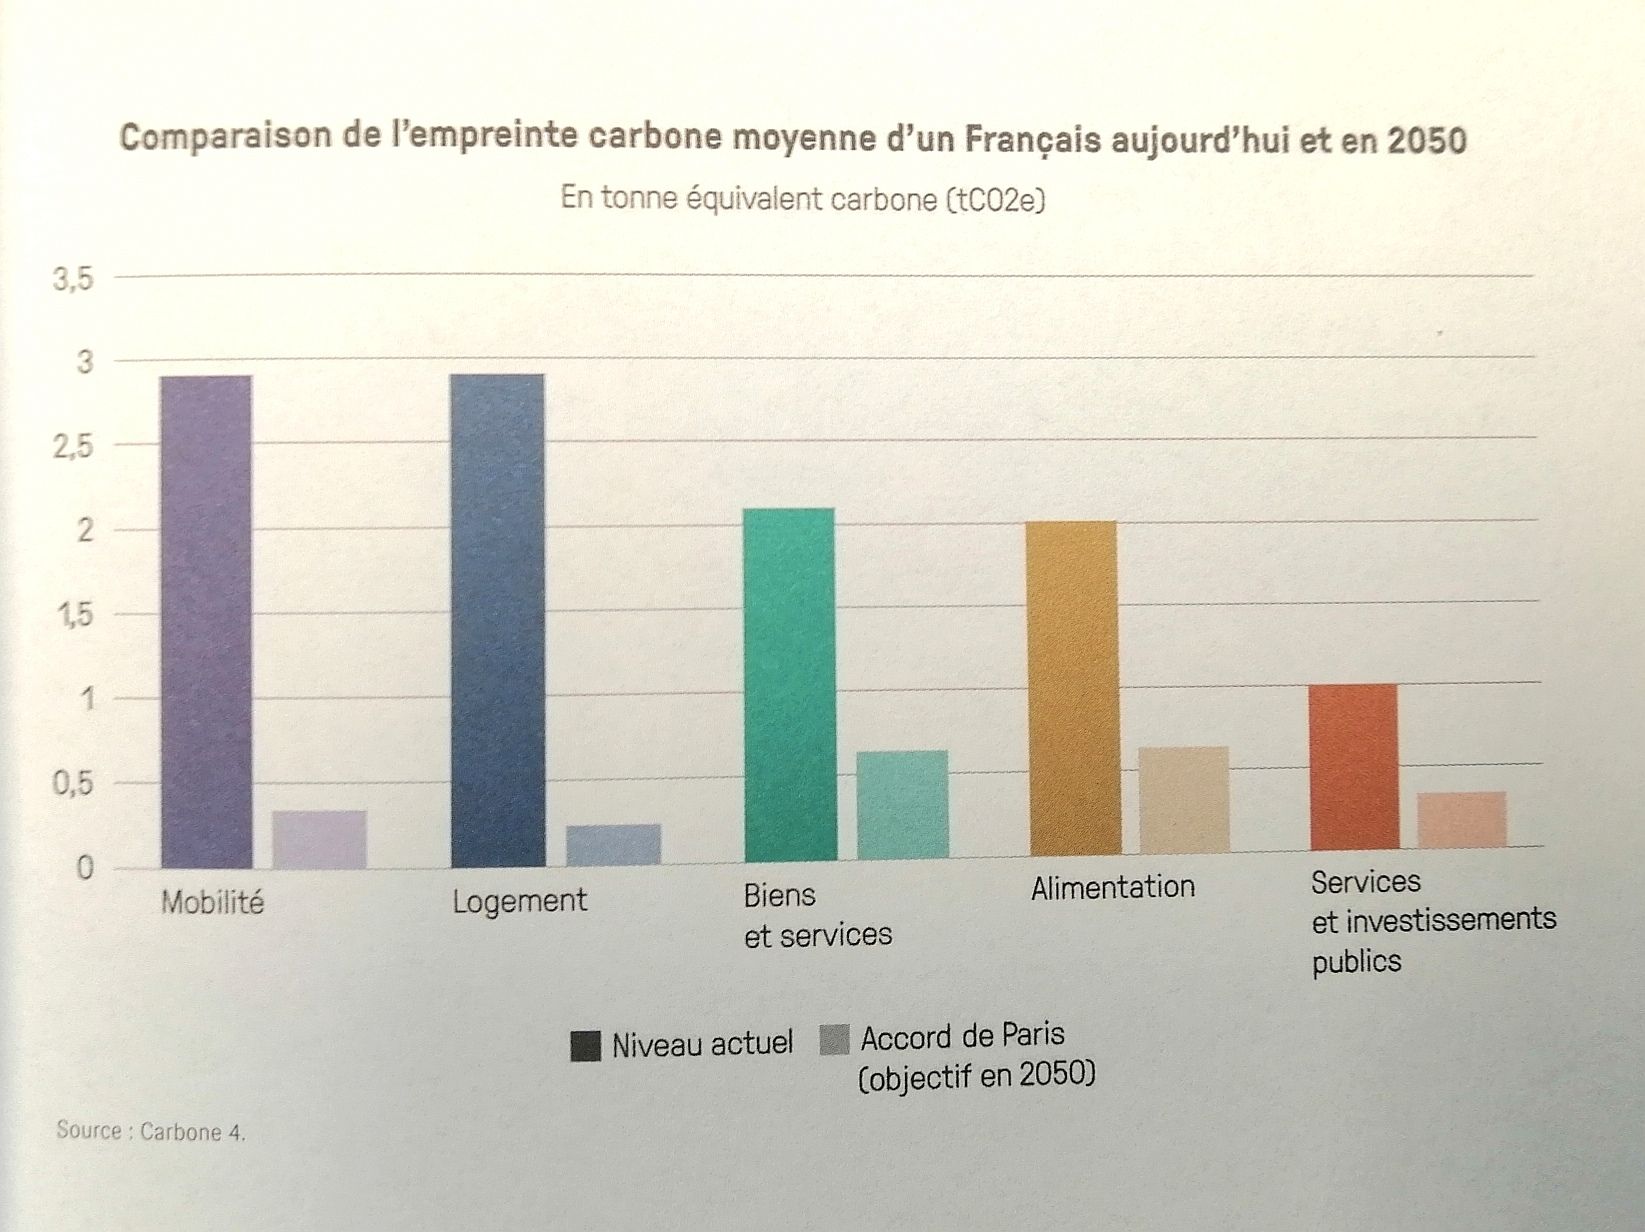 empreinte carbone actuelle en France, comparée à ce qu'elle devrait être en 2050 selon les objectifs de la cop 21